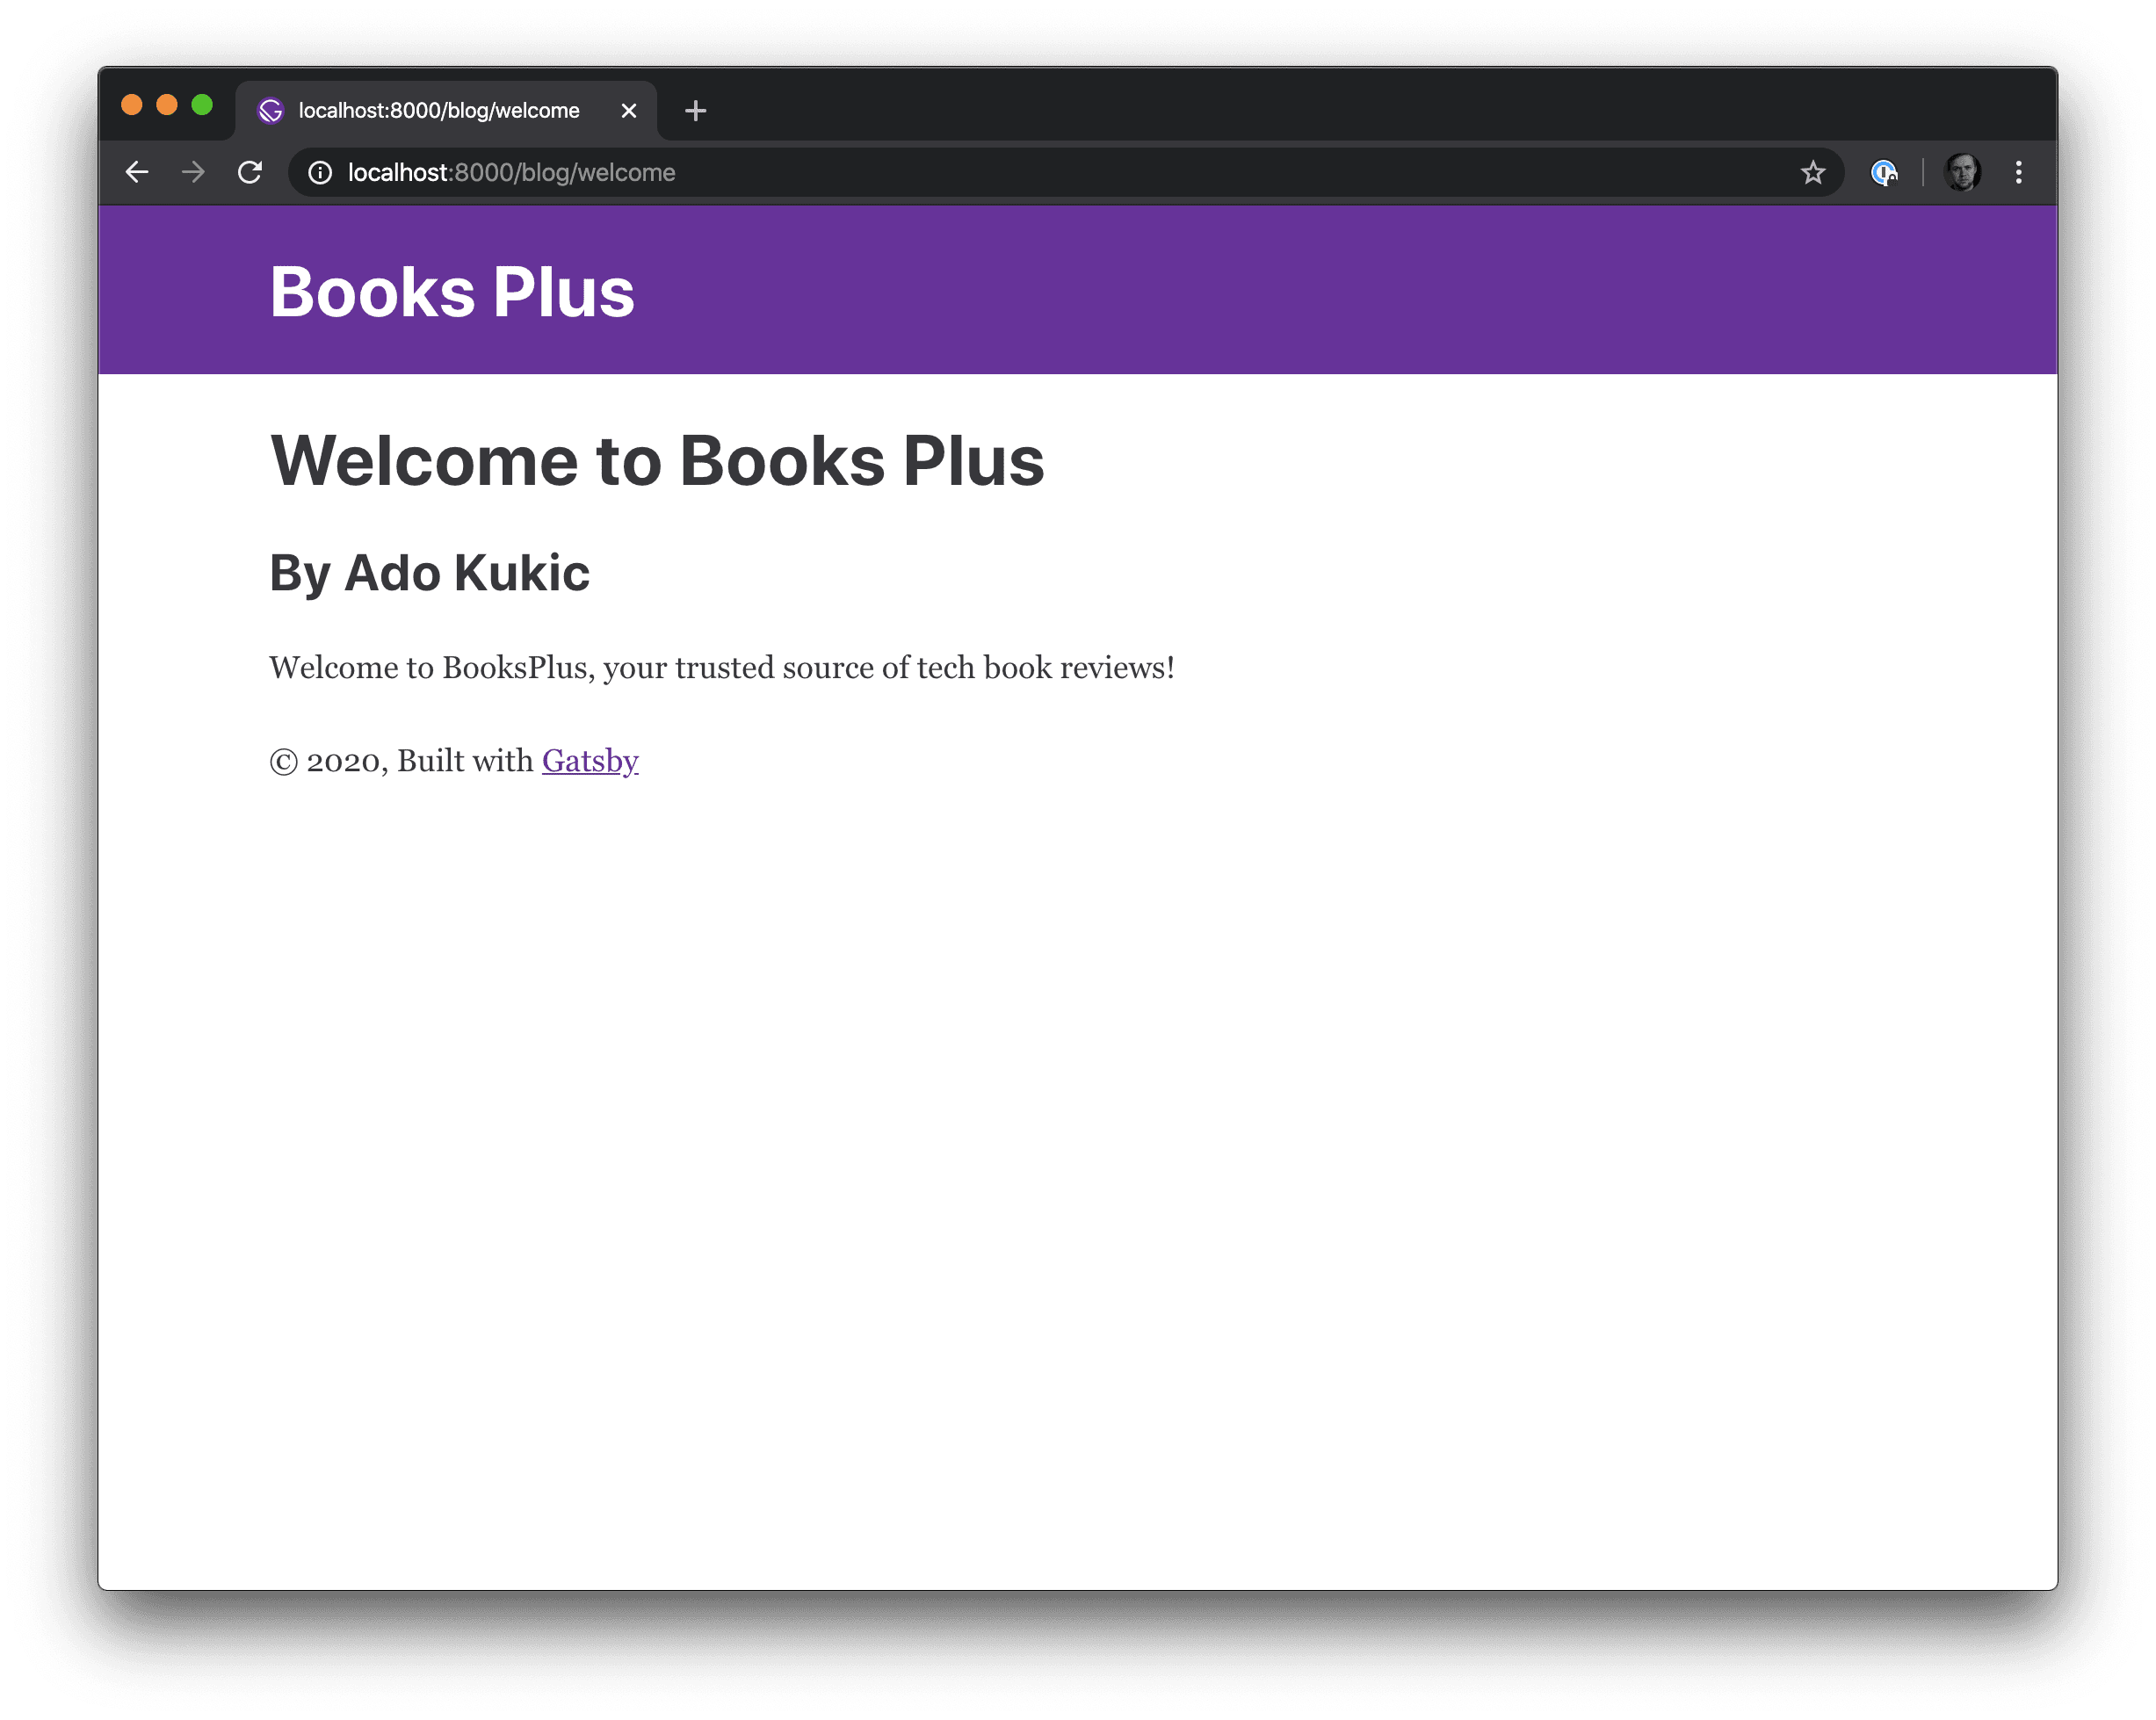 Books Plus Post